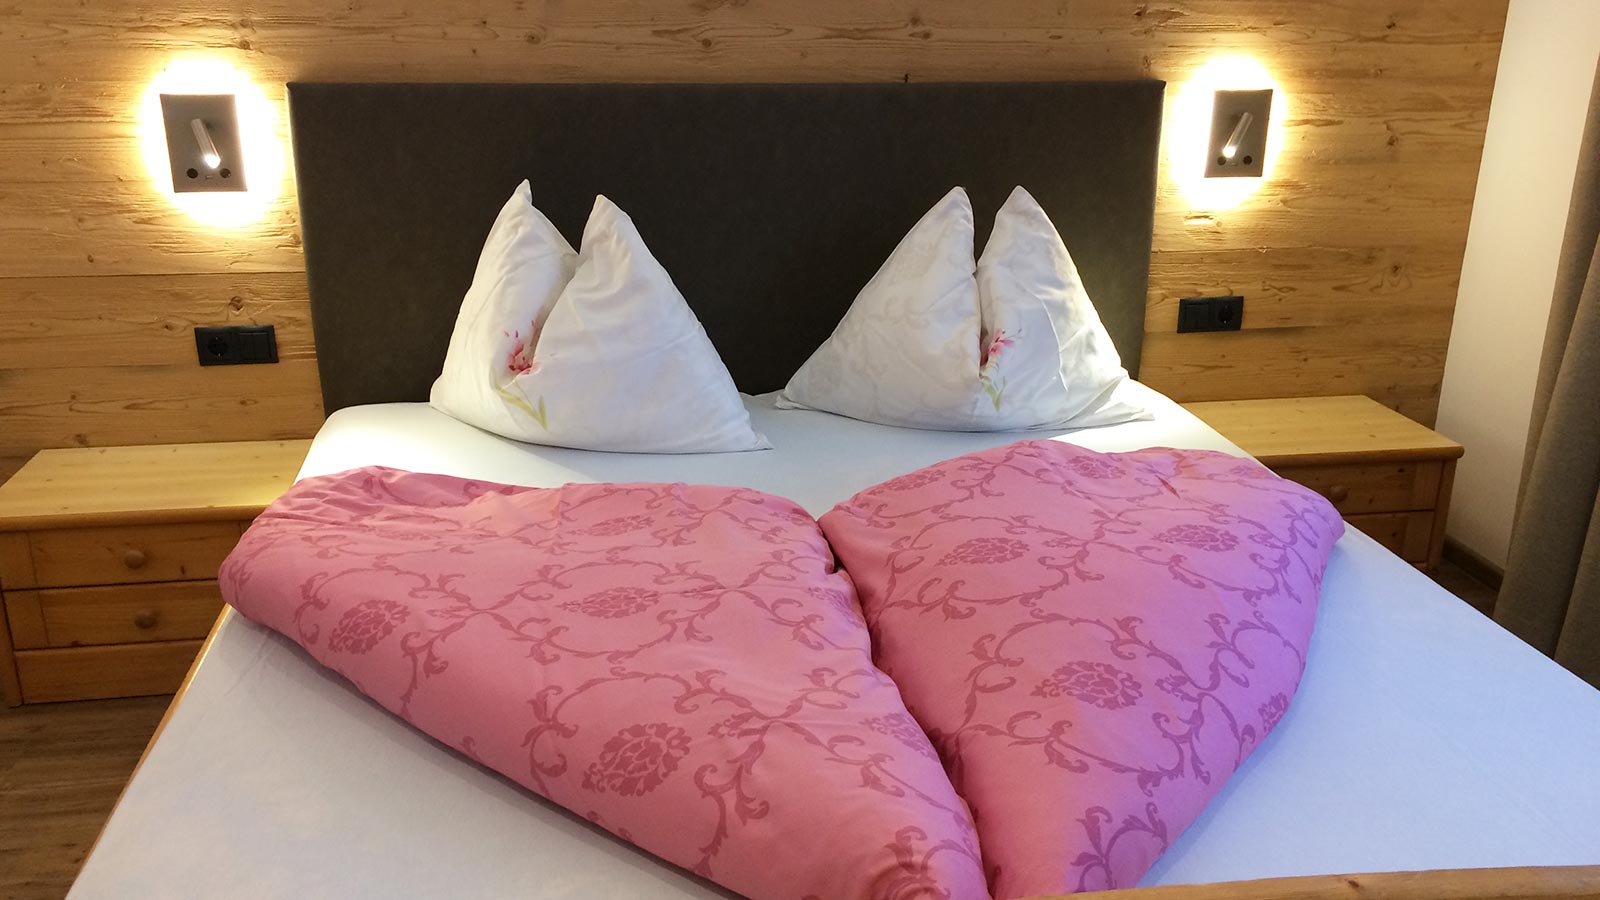 Dettaglio di un letto con lenzuola rosa di una delle camere da letto dell'Albergo Blosegg